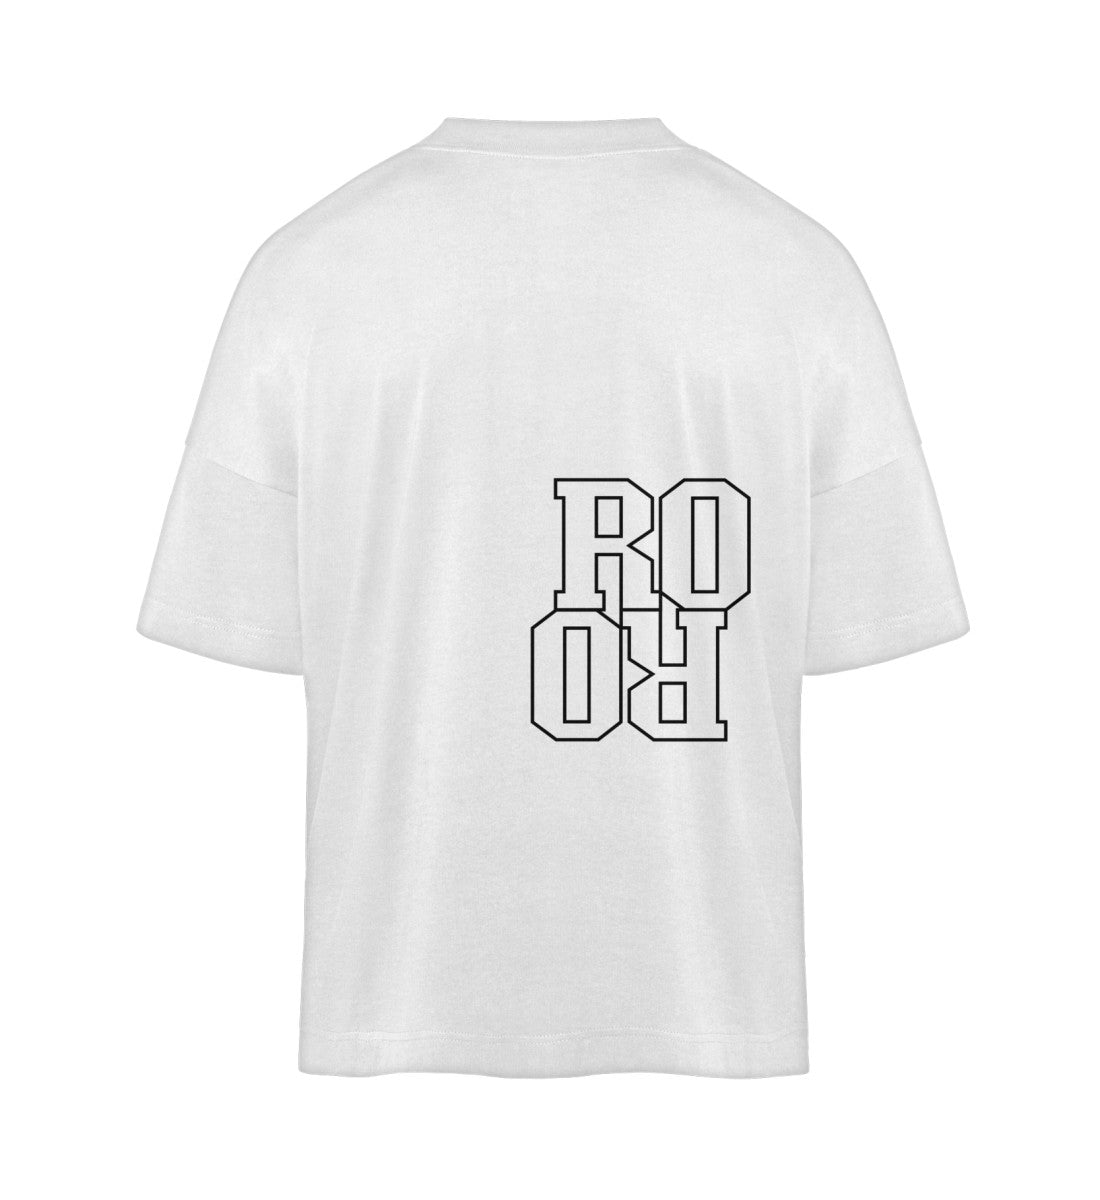 Weißes T-Shirt Unisex Oversize Fit für Frauen und Männer bedruckt mit dem Design der Roger Rockawoo Kollektion basketball run and gun